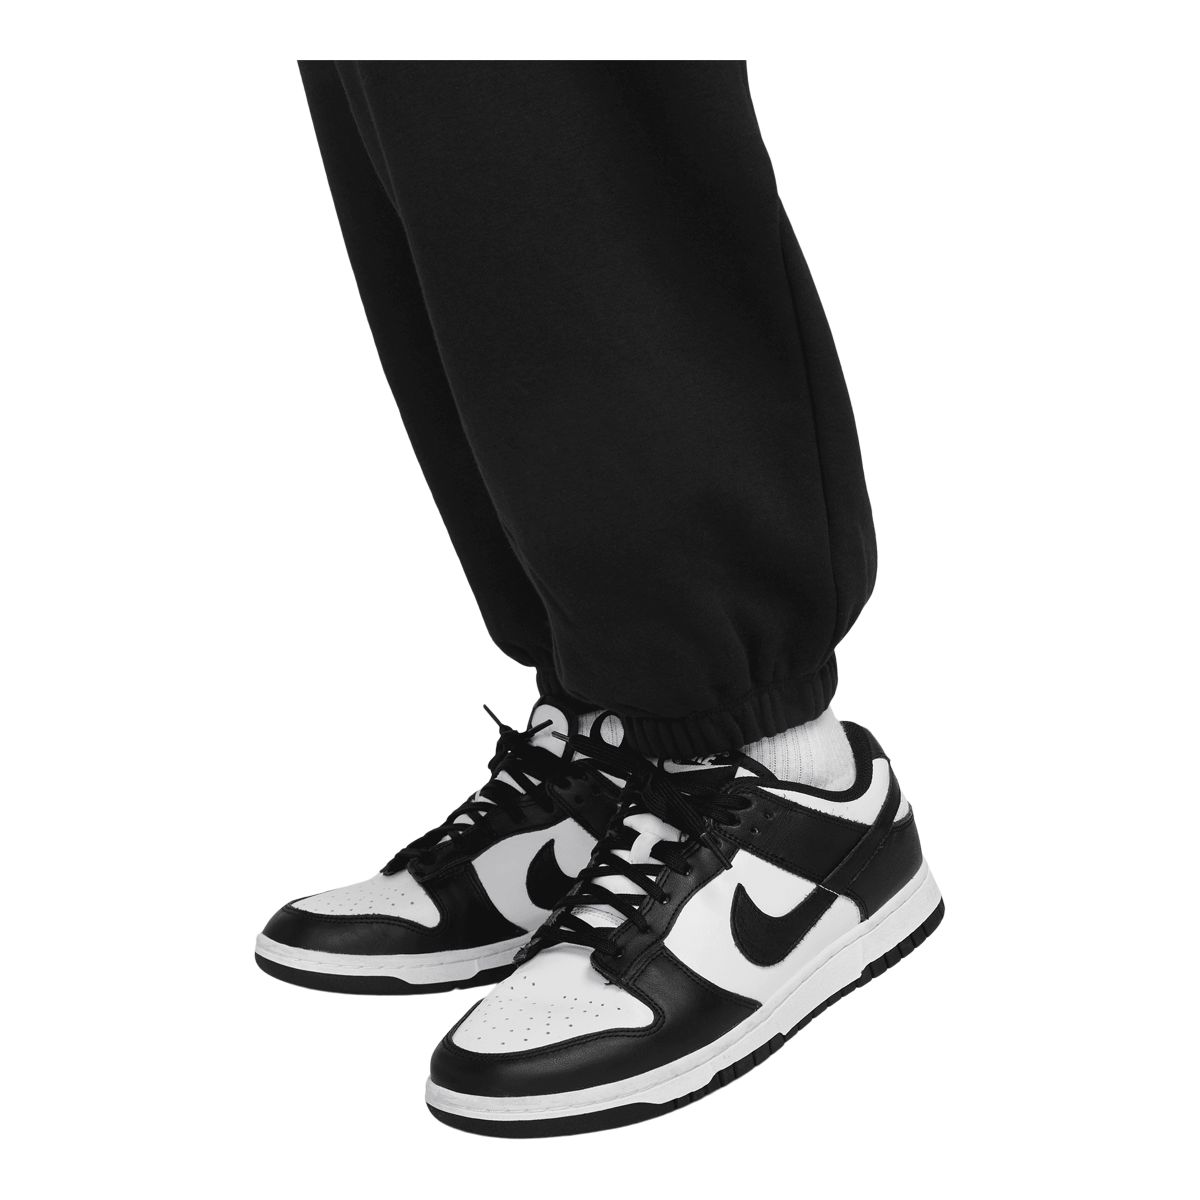 Nike Women's Sportswear Club Fleece Mid-Rise Joggers-White/Black